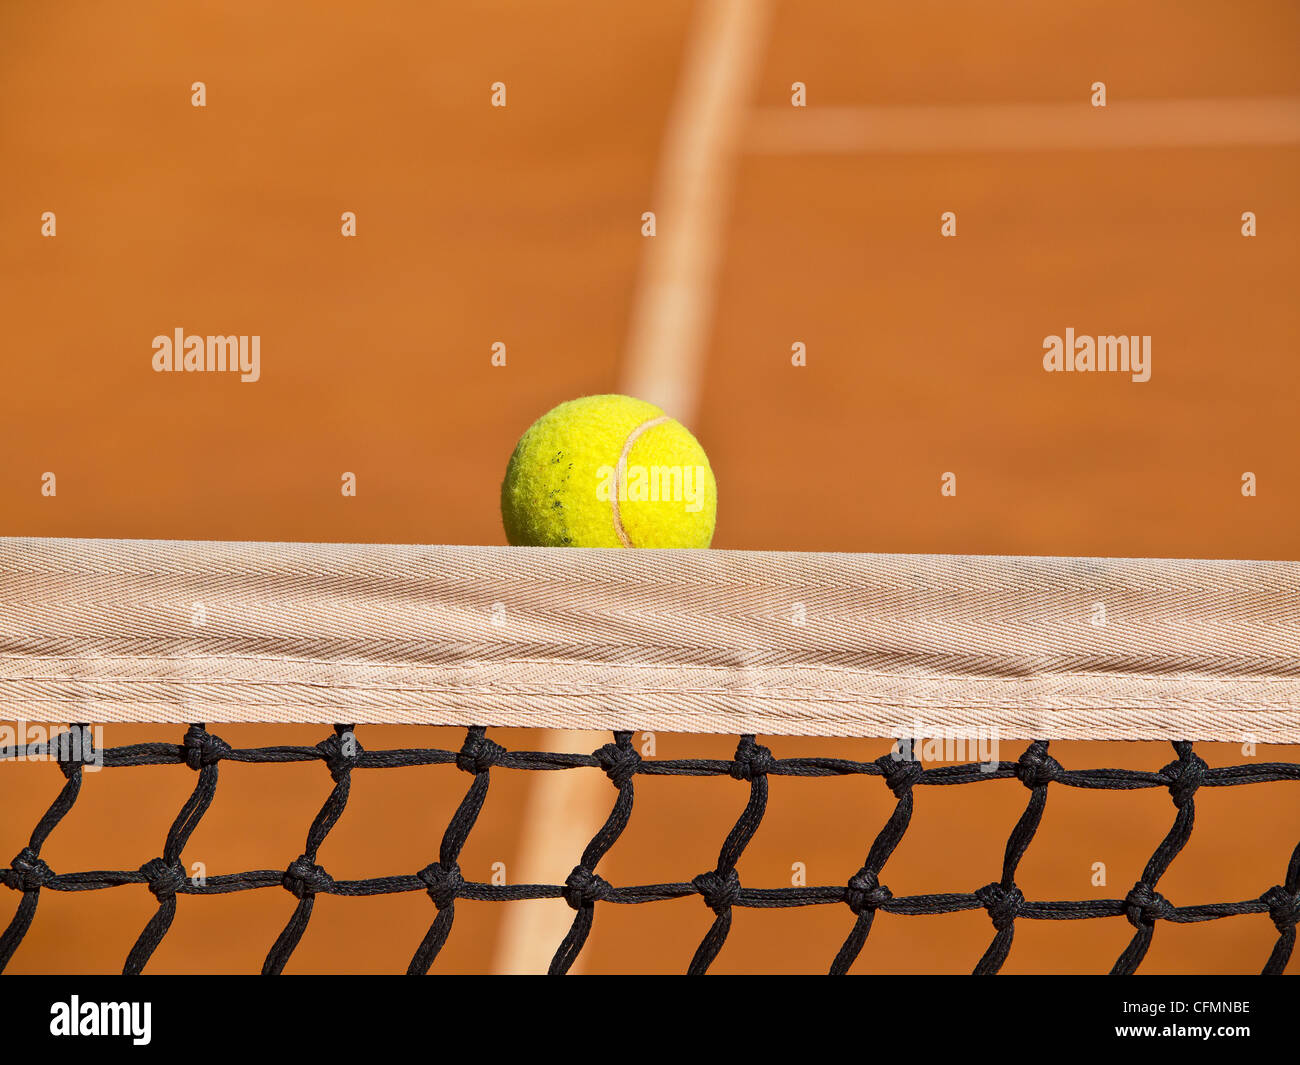 Balle de tennis dans le filet de la pile Banque D'Images